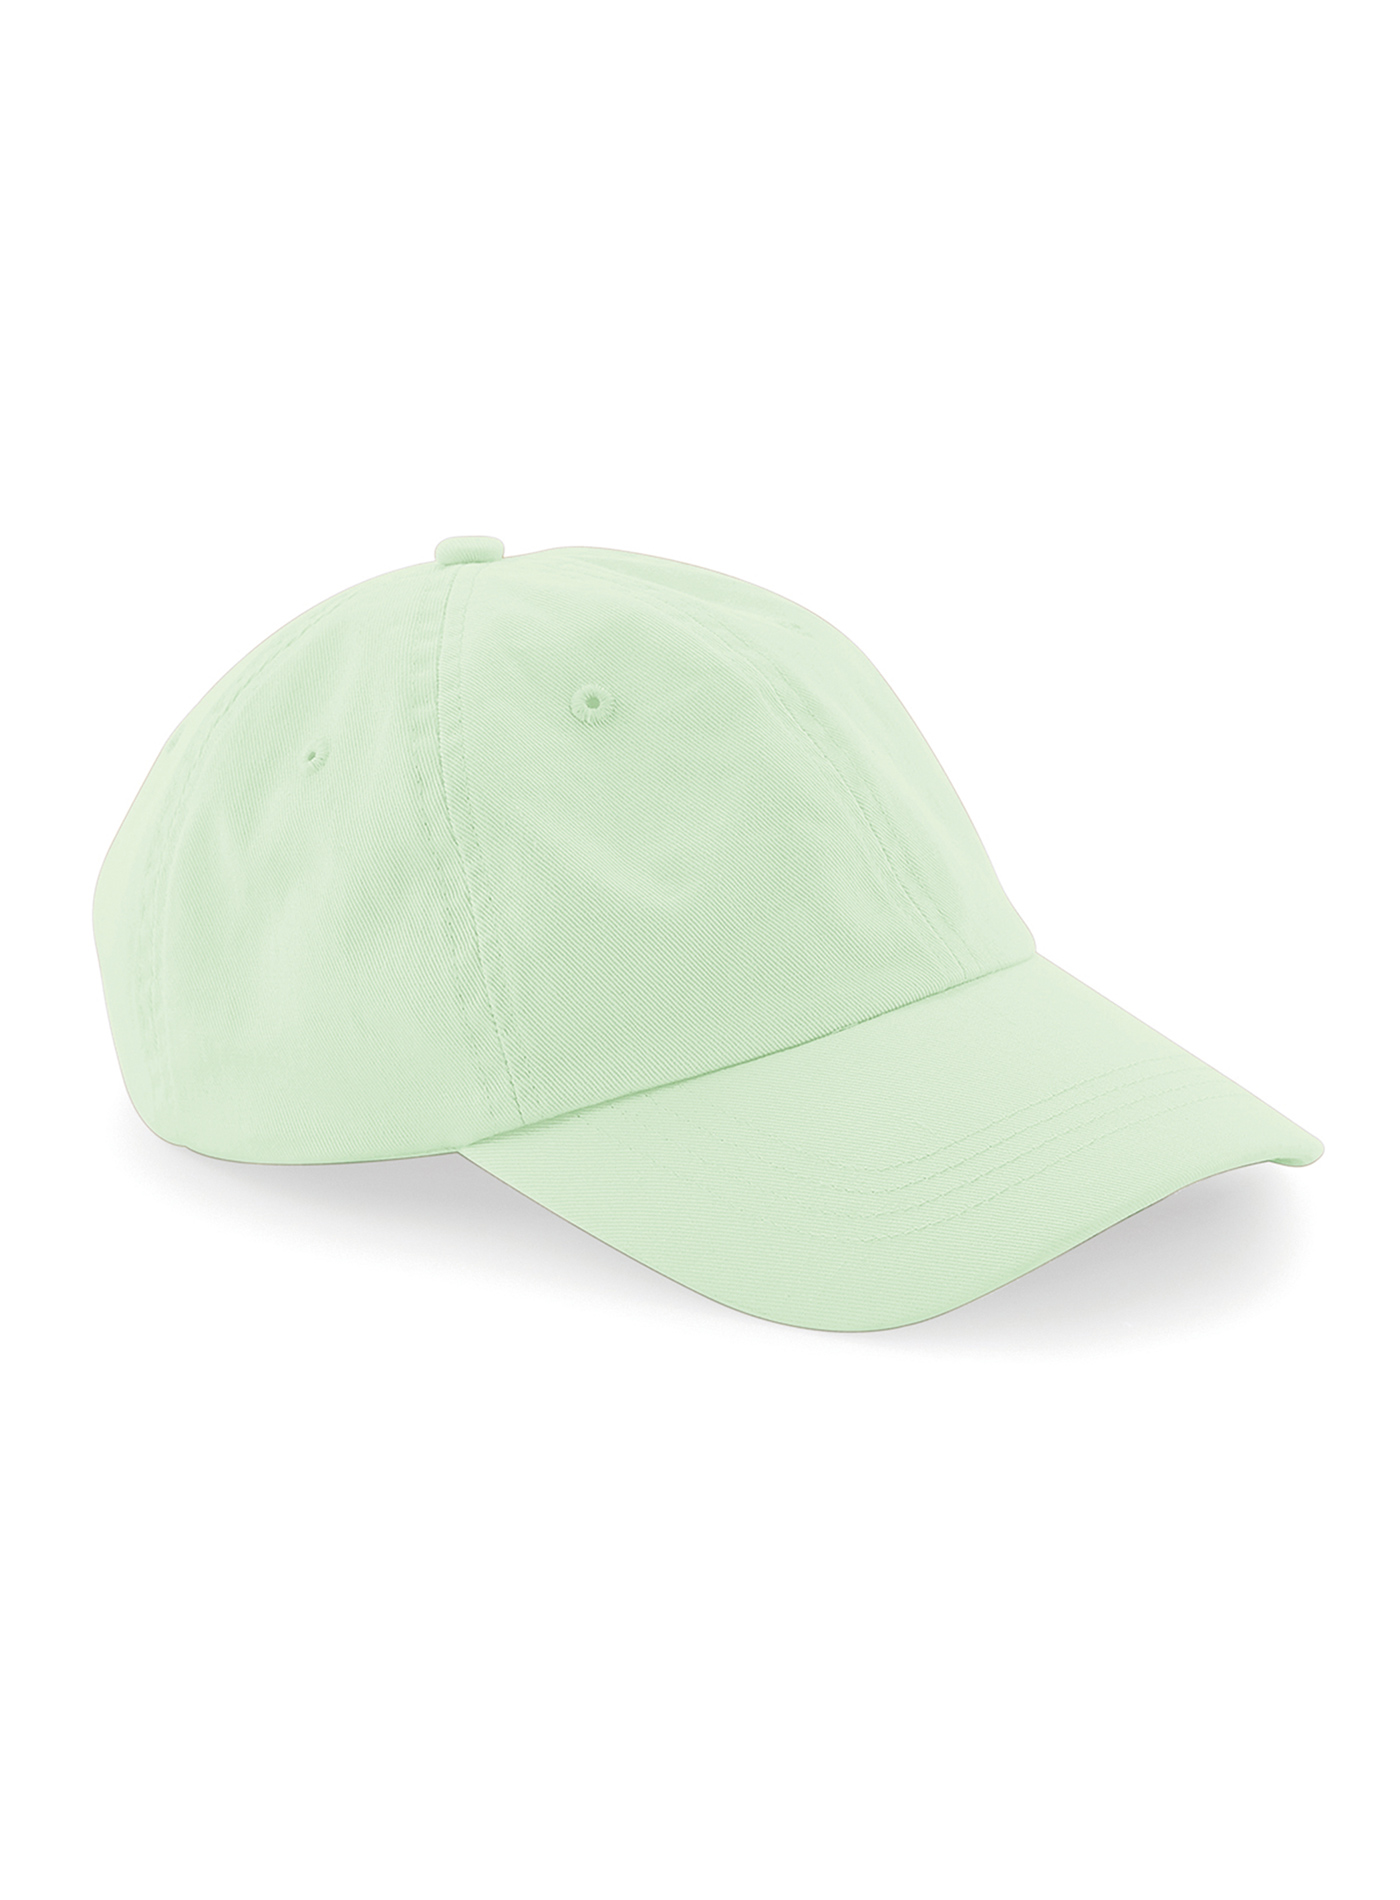 Čepice s nízkým profilem 6 dílná Beechfield - Bledě zelená univerzal